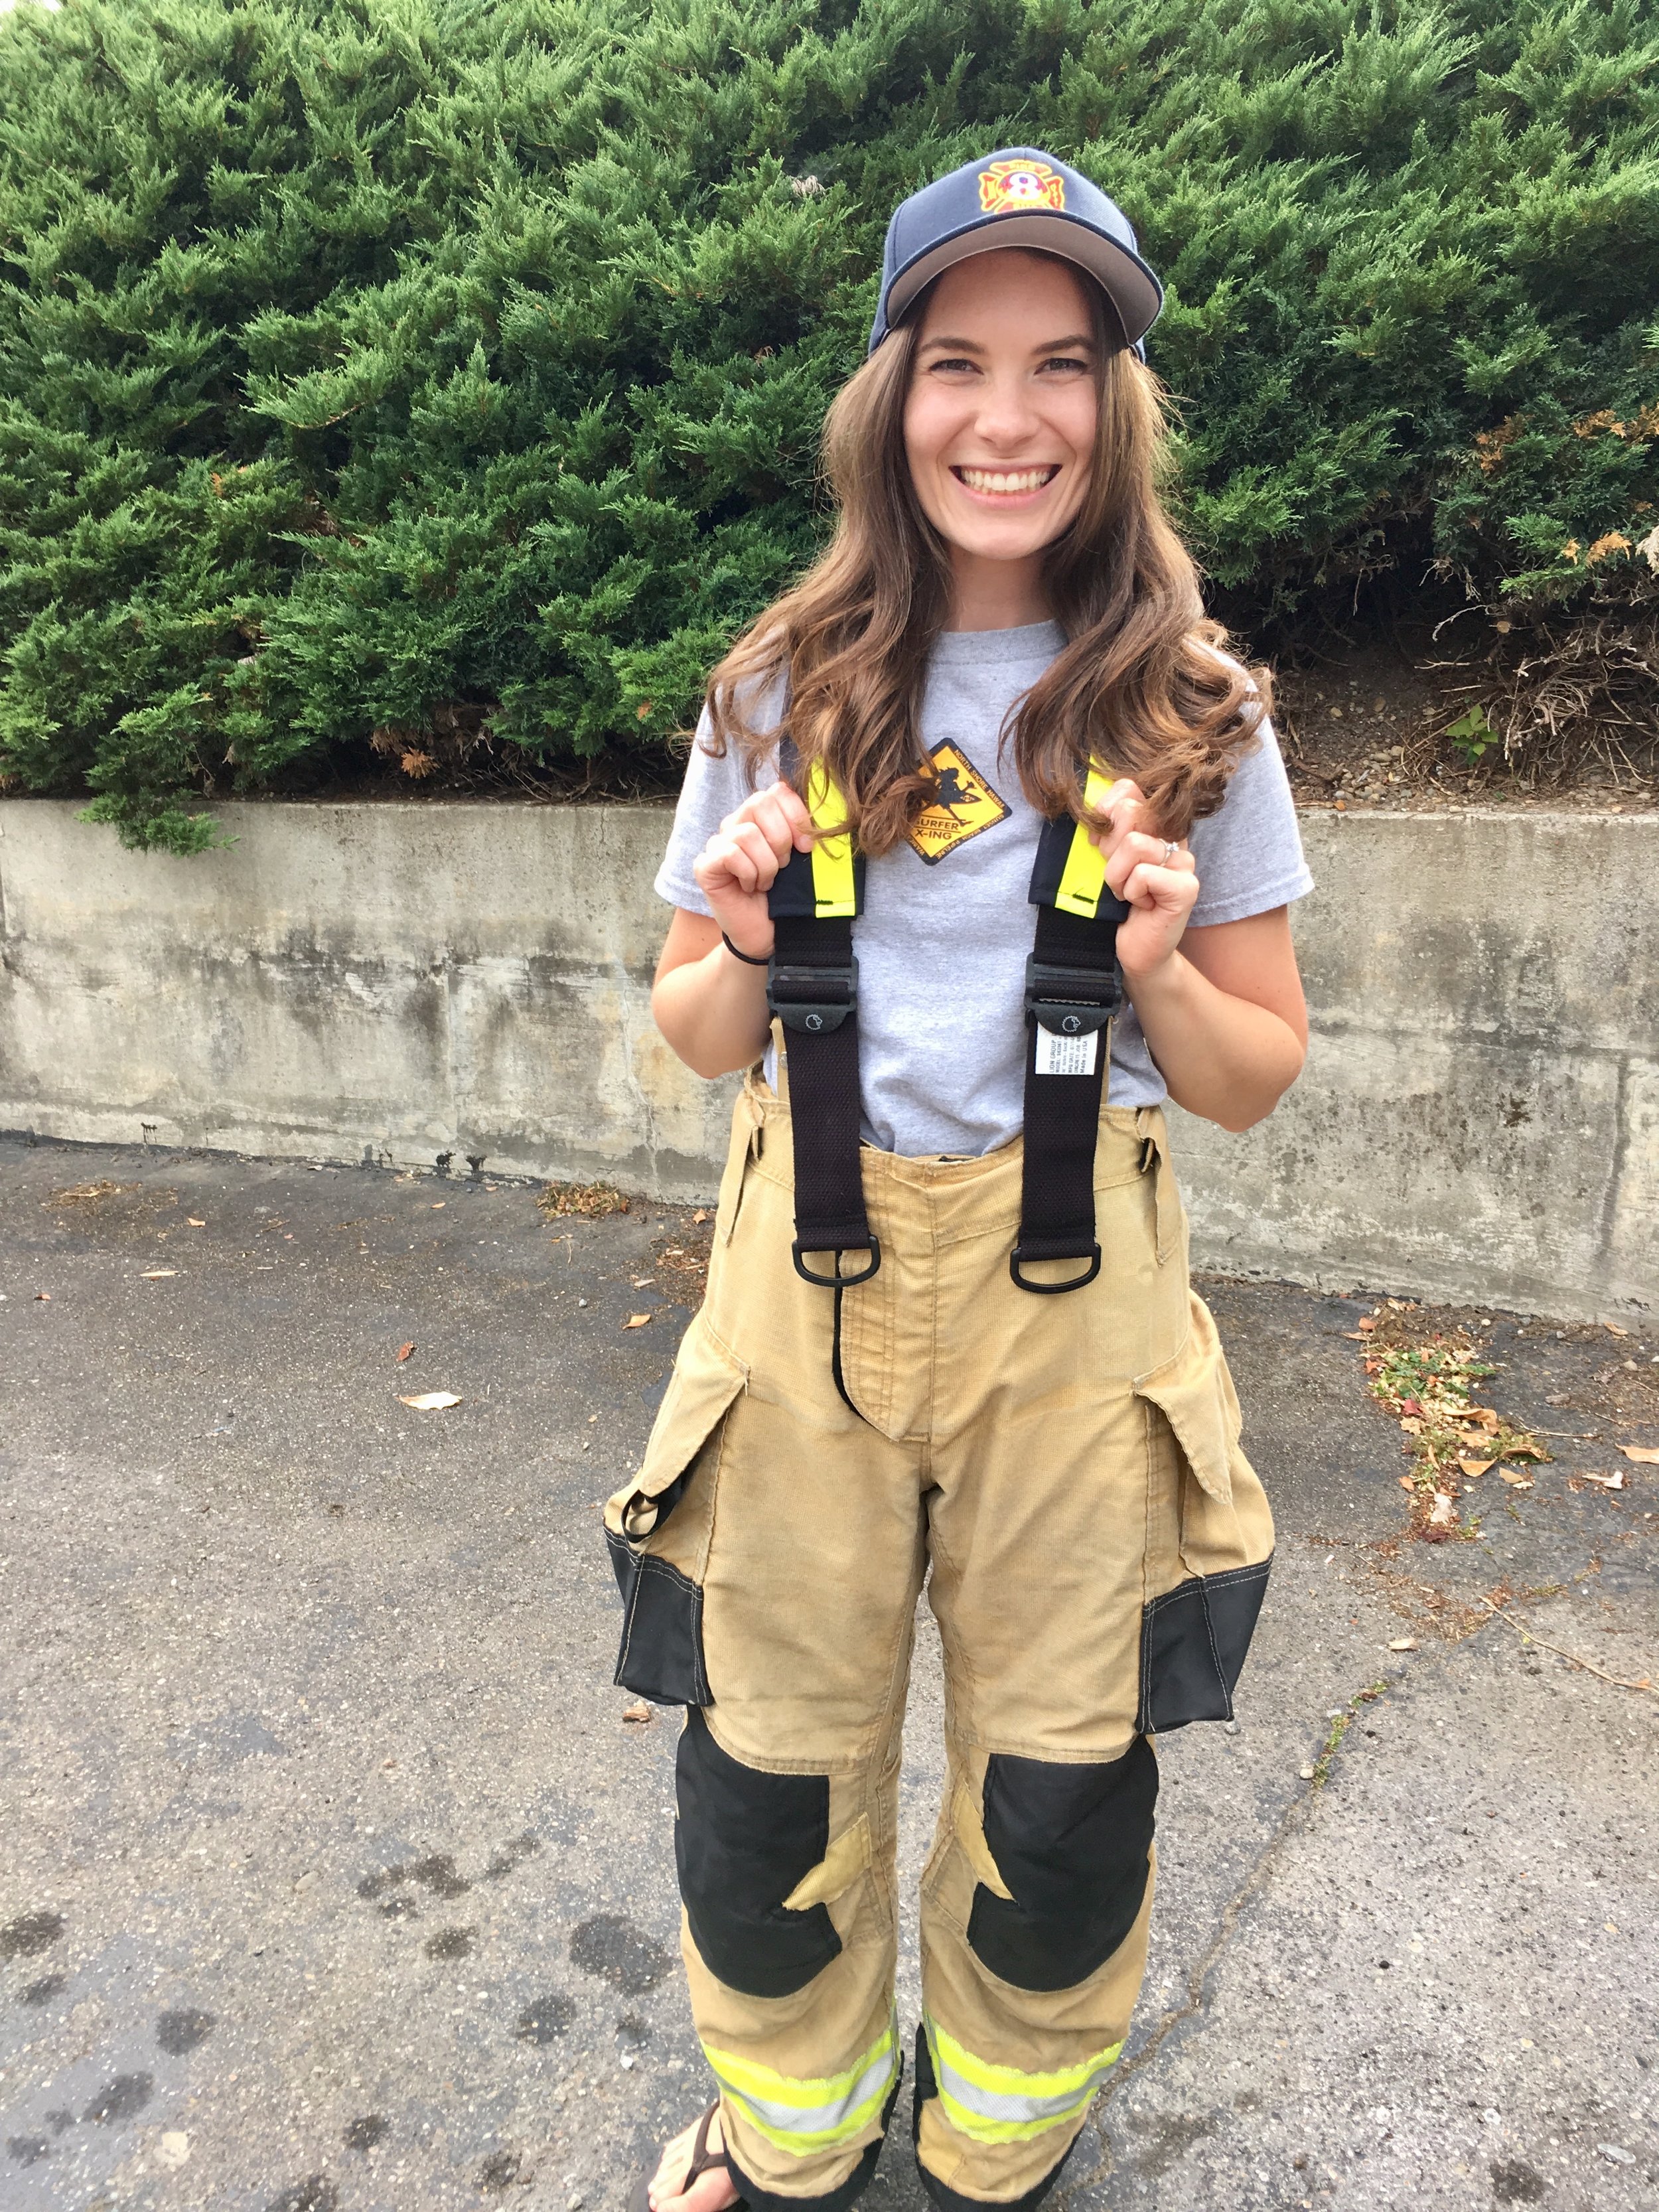 Tara at firefighter's training